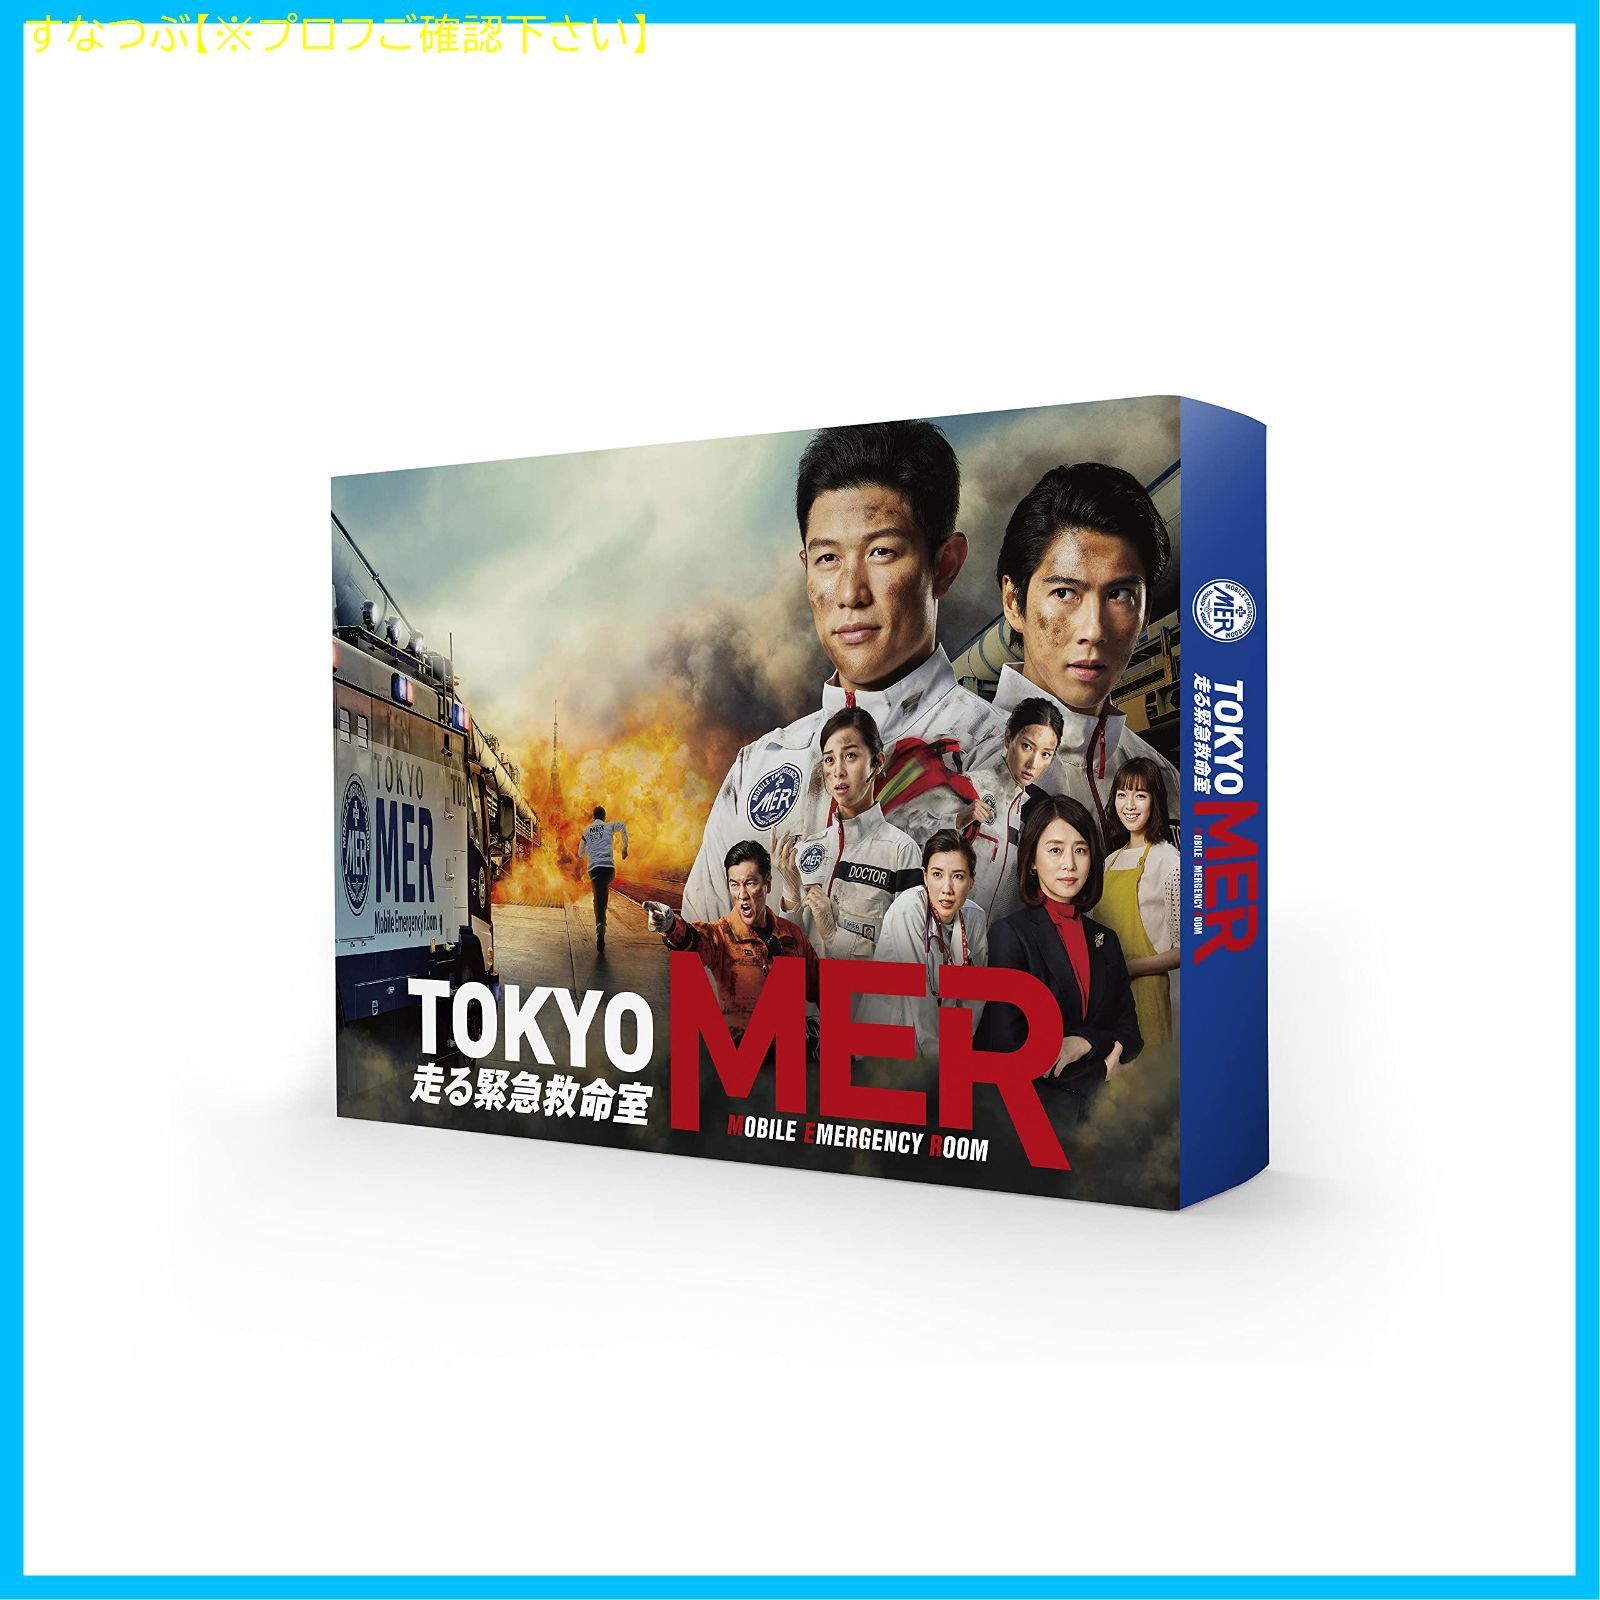 【新品未開封】TOKYO MER~走る緊急救命室~ DVD-BOX 鈴木亮平 (出演) 賀来賢人 (出演) 形式: DVD